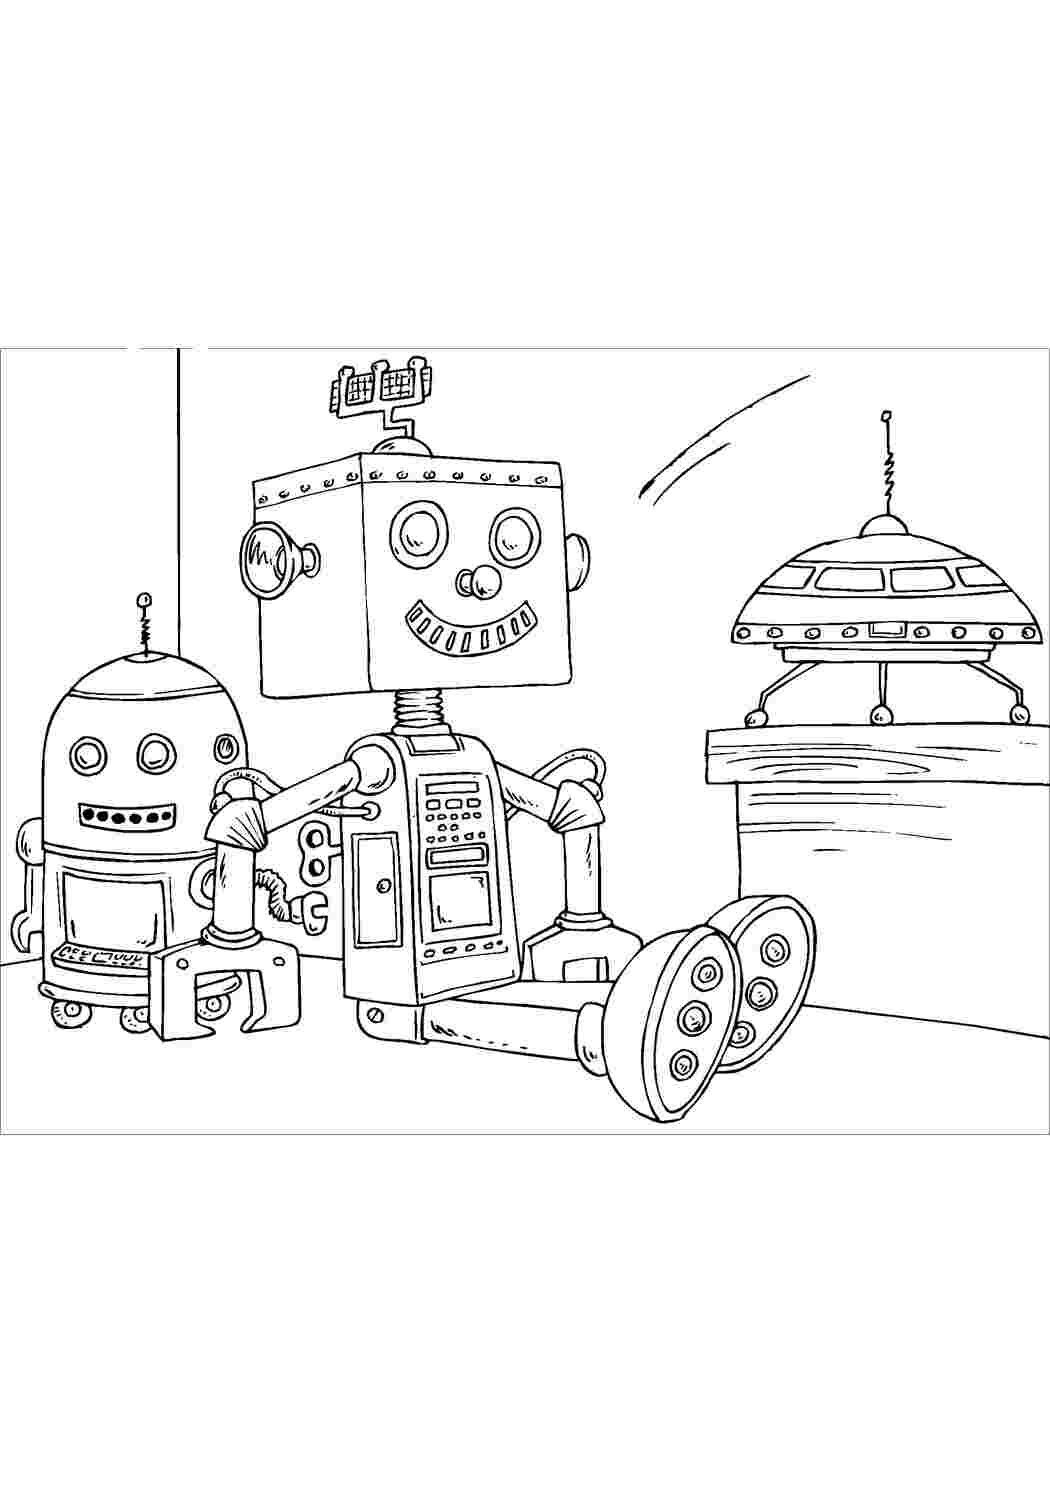 Раскраски картинки на рабочий стол онлайн Маленькие роботы сидят Раскраски для детей мальчиков